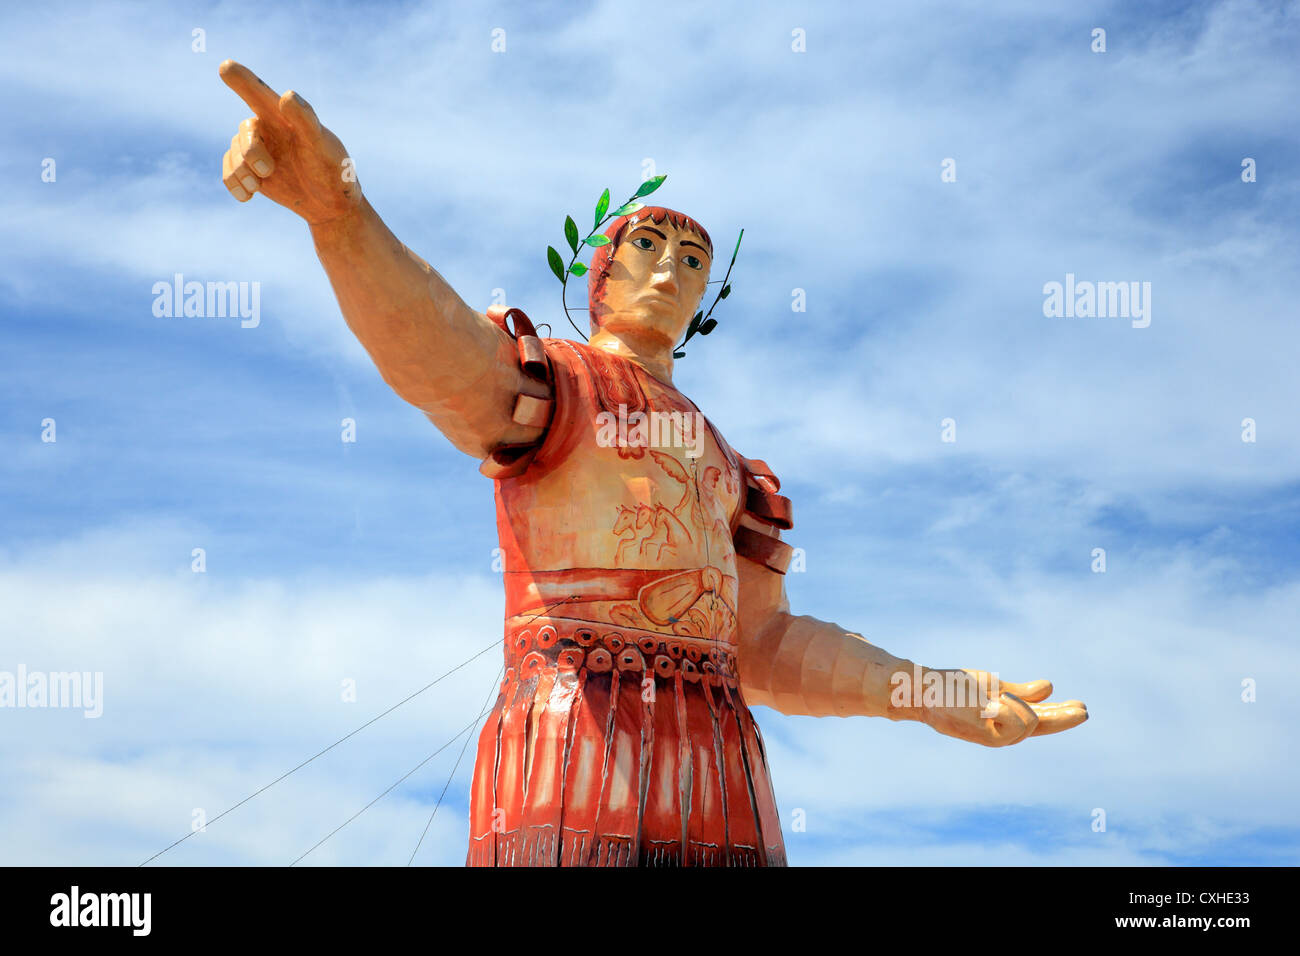 Carnival sculpture, Mazatlan, Sinaloa, Mexico Stock Photo